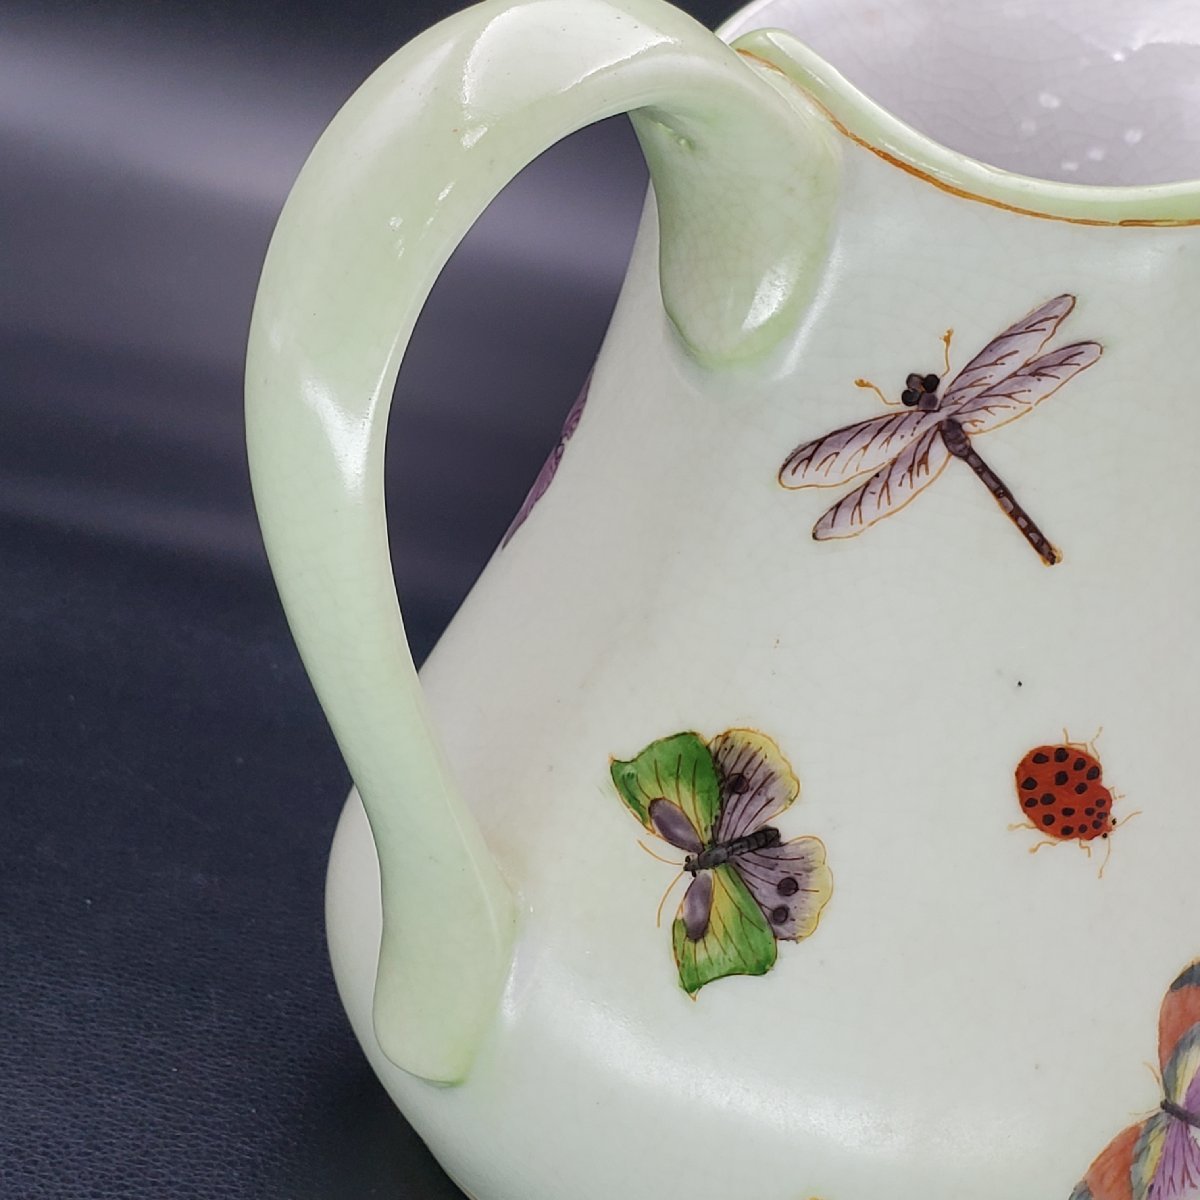 [. магазин ]G&C Дания производства насекомое рисунок вода питчер кувшин ваза украшение 18. античный коллекция интерьер 